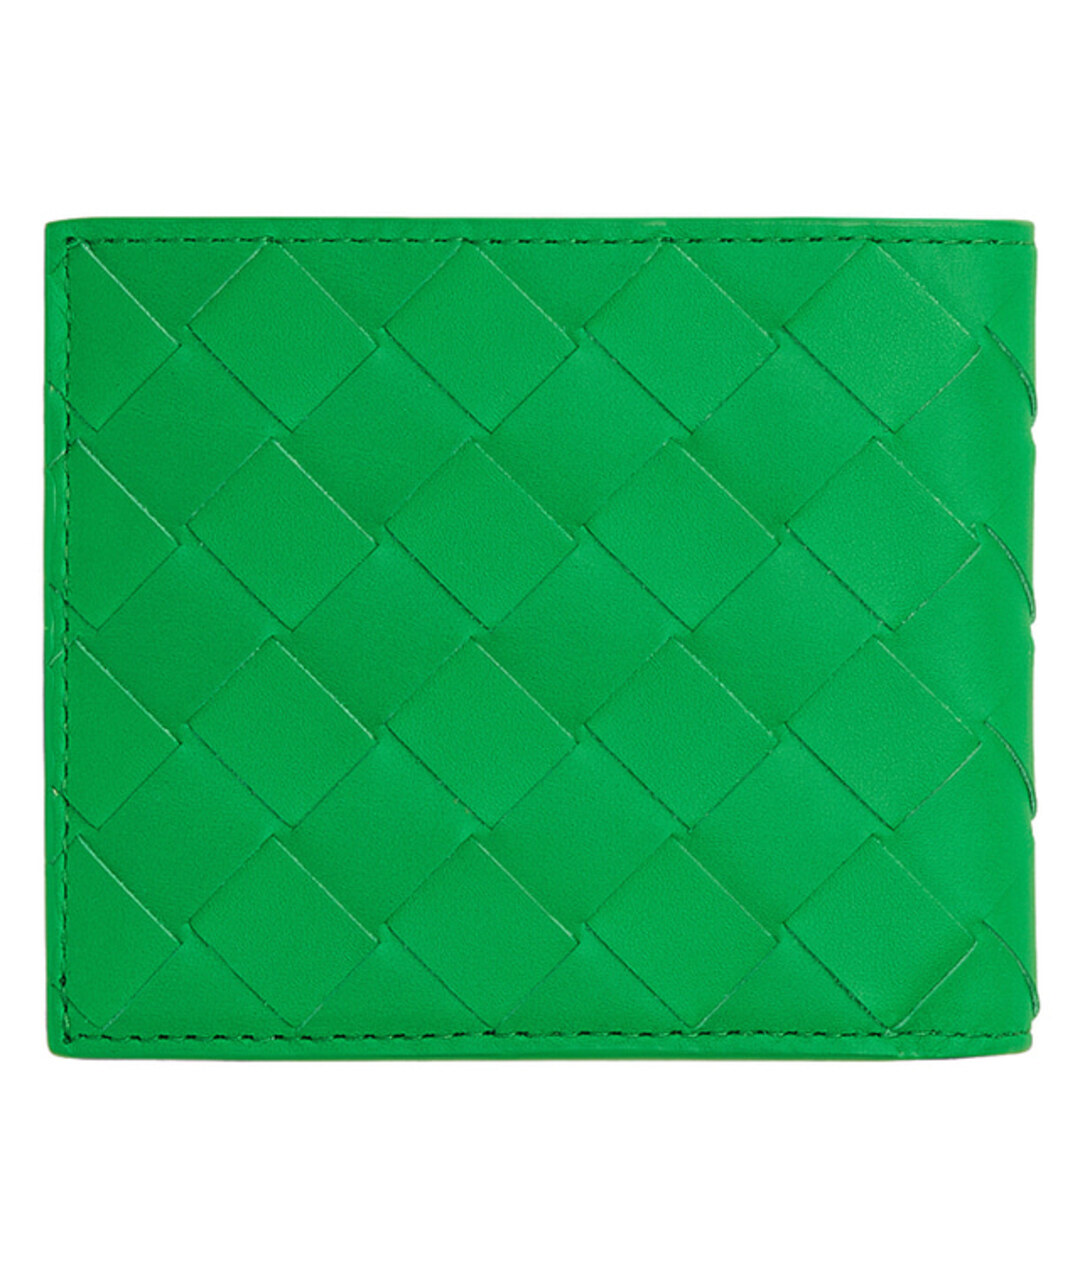 BOTTEGA VENETA Зеленый кожаный кошелек, фото 1